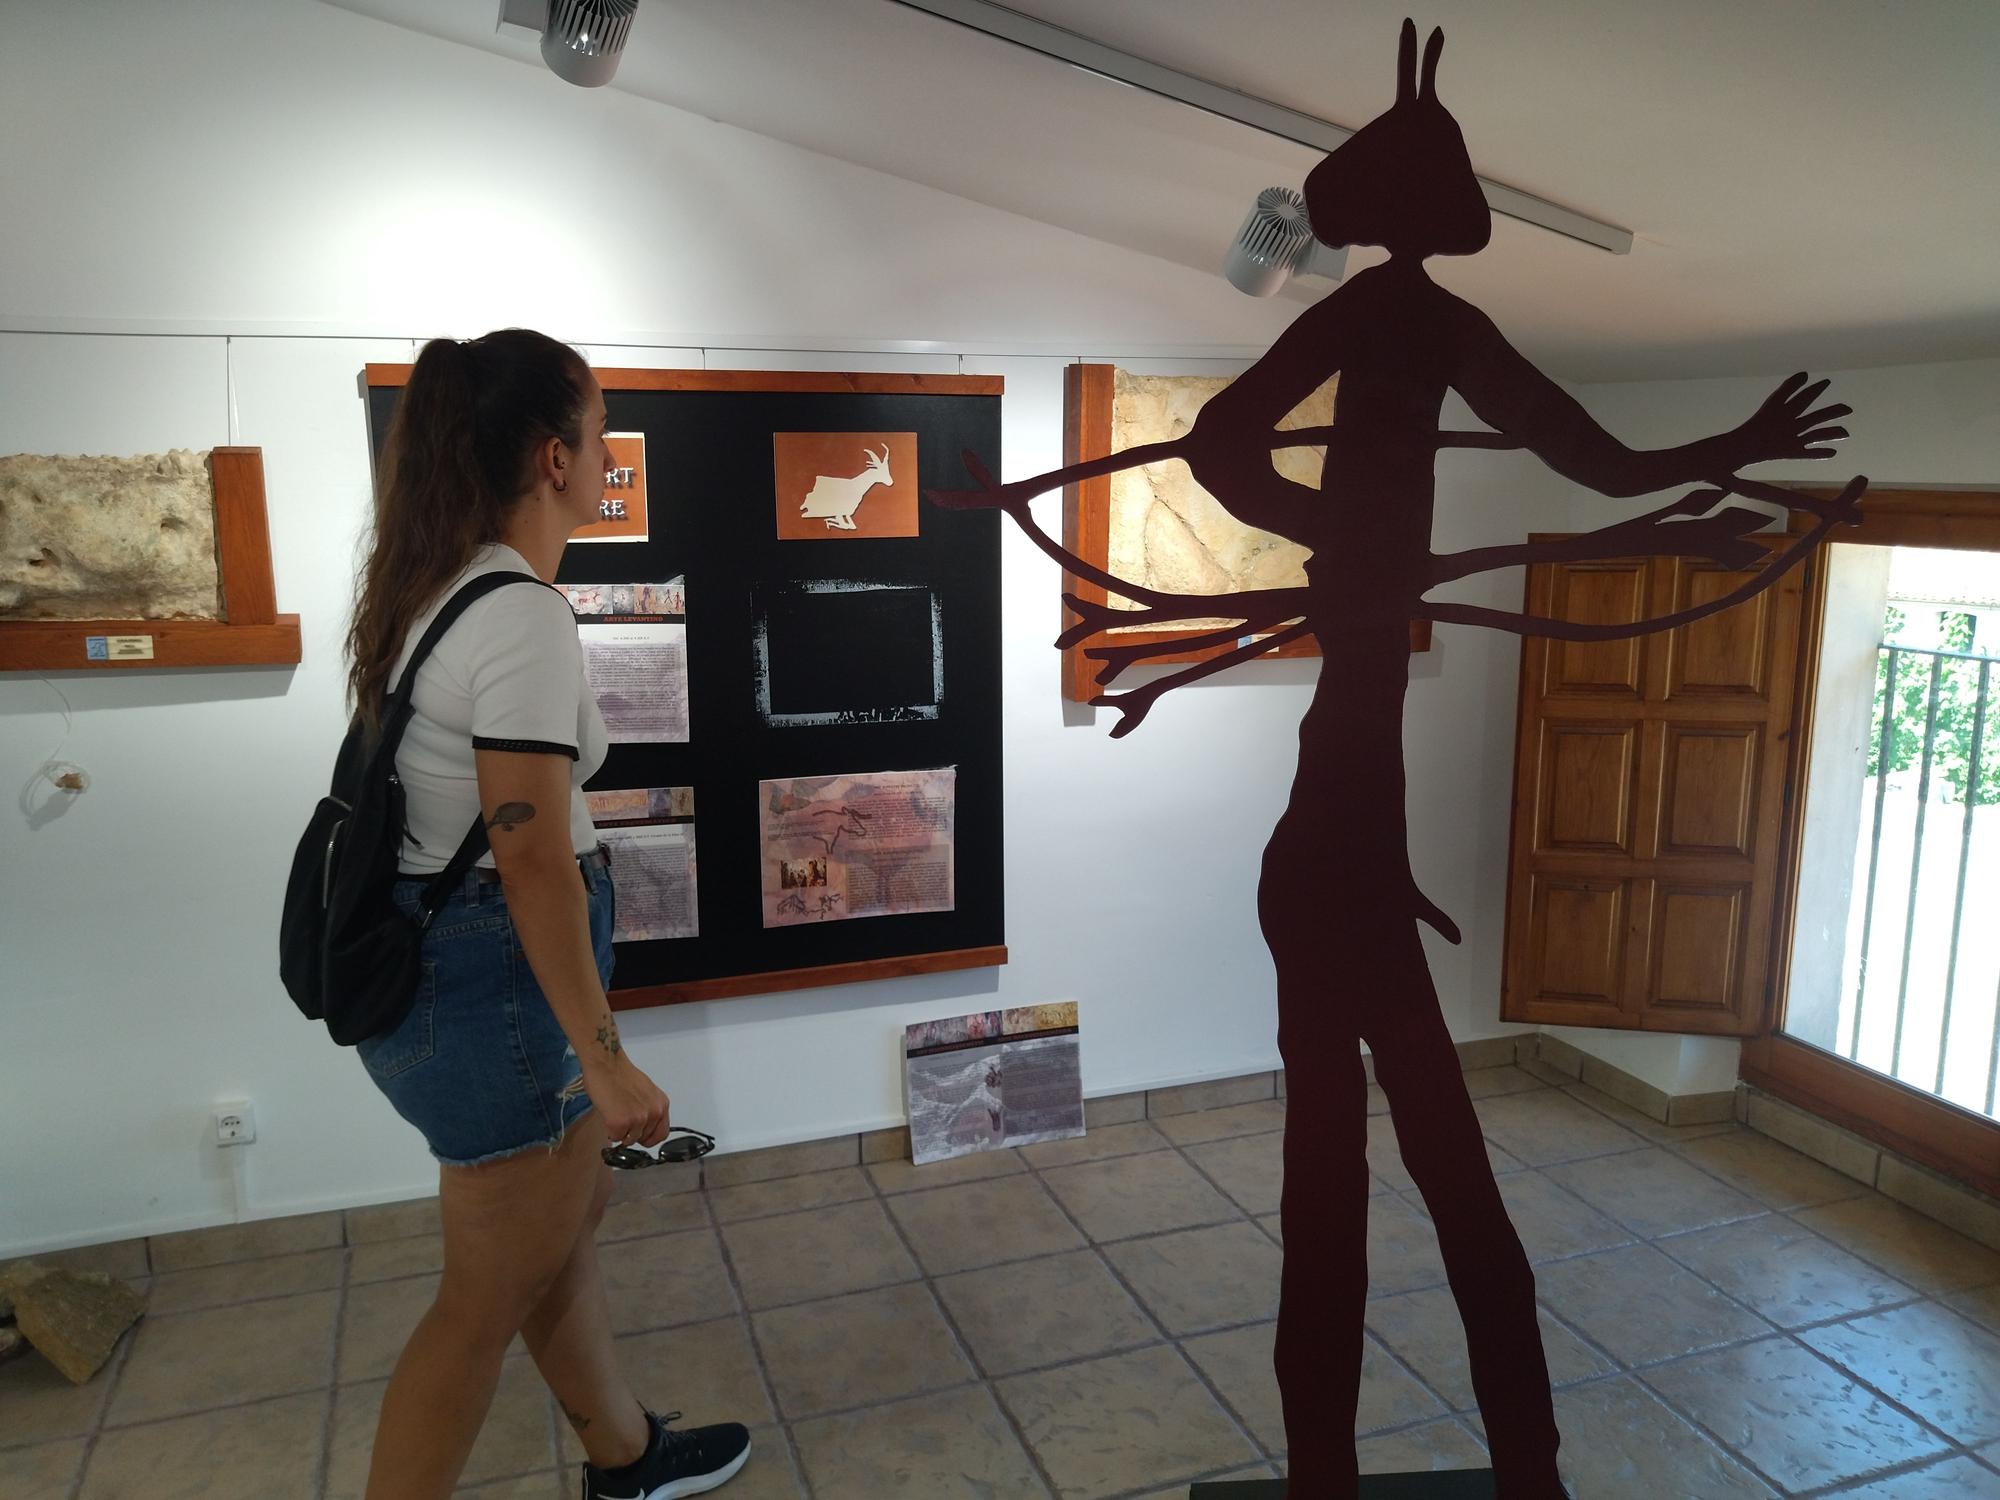 El museo es la vida: resurge la historia de la Vall d'Ebo